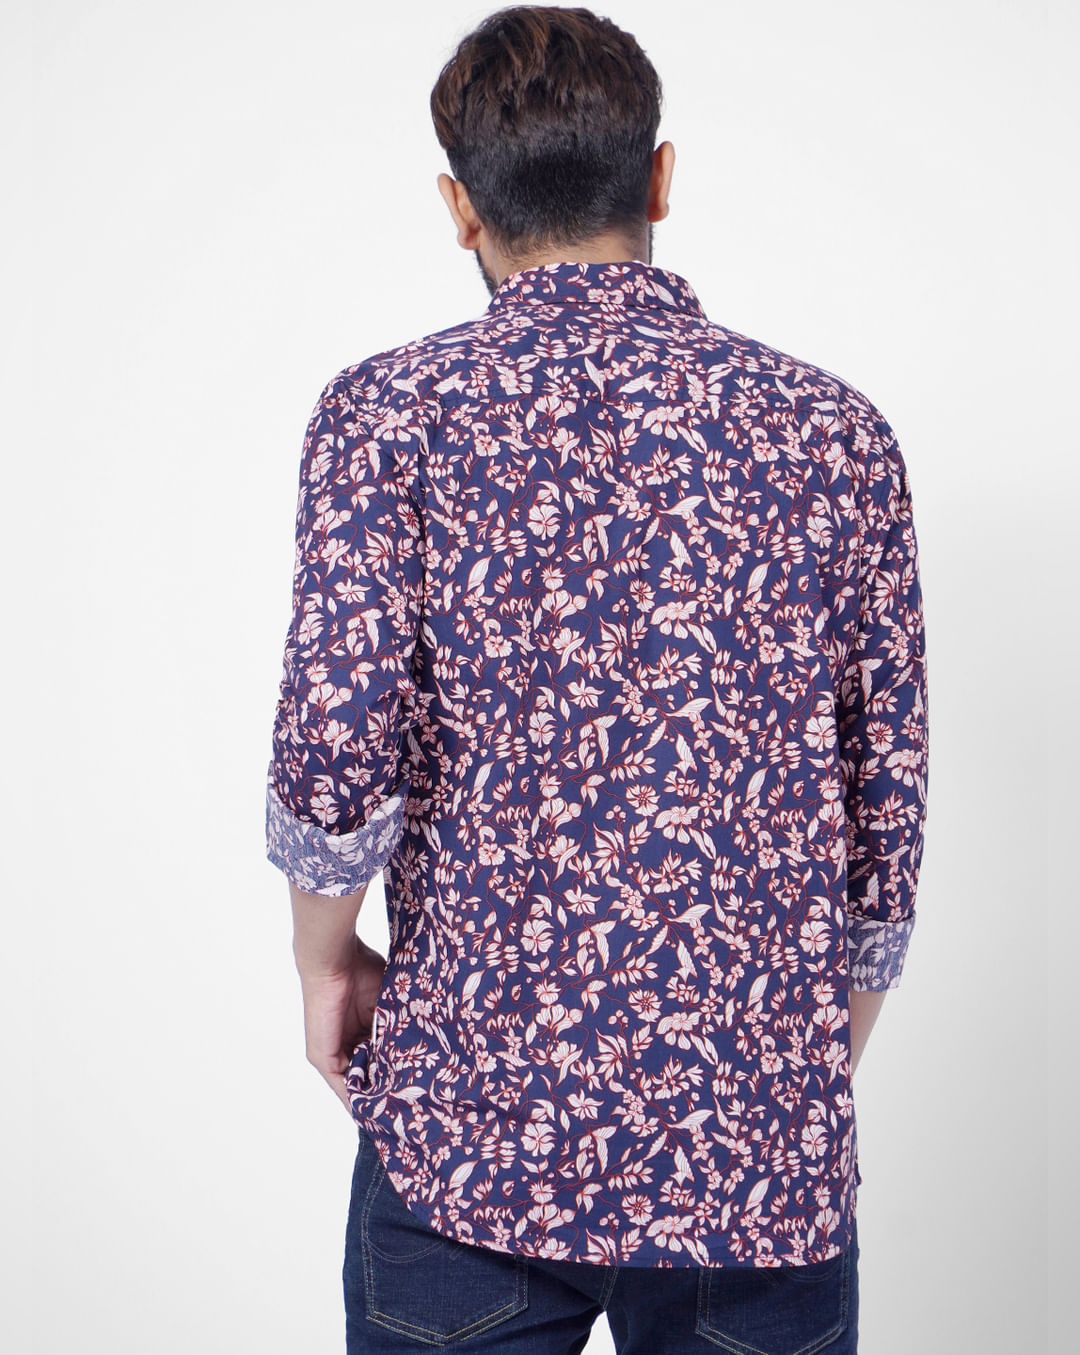 Floral lace T-shirt, Le 31, Shop Men's Short Sleeve & 3/4 Sleeve T-Shirts